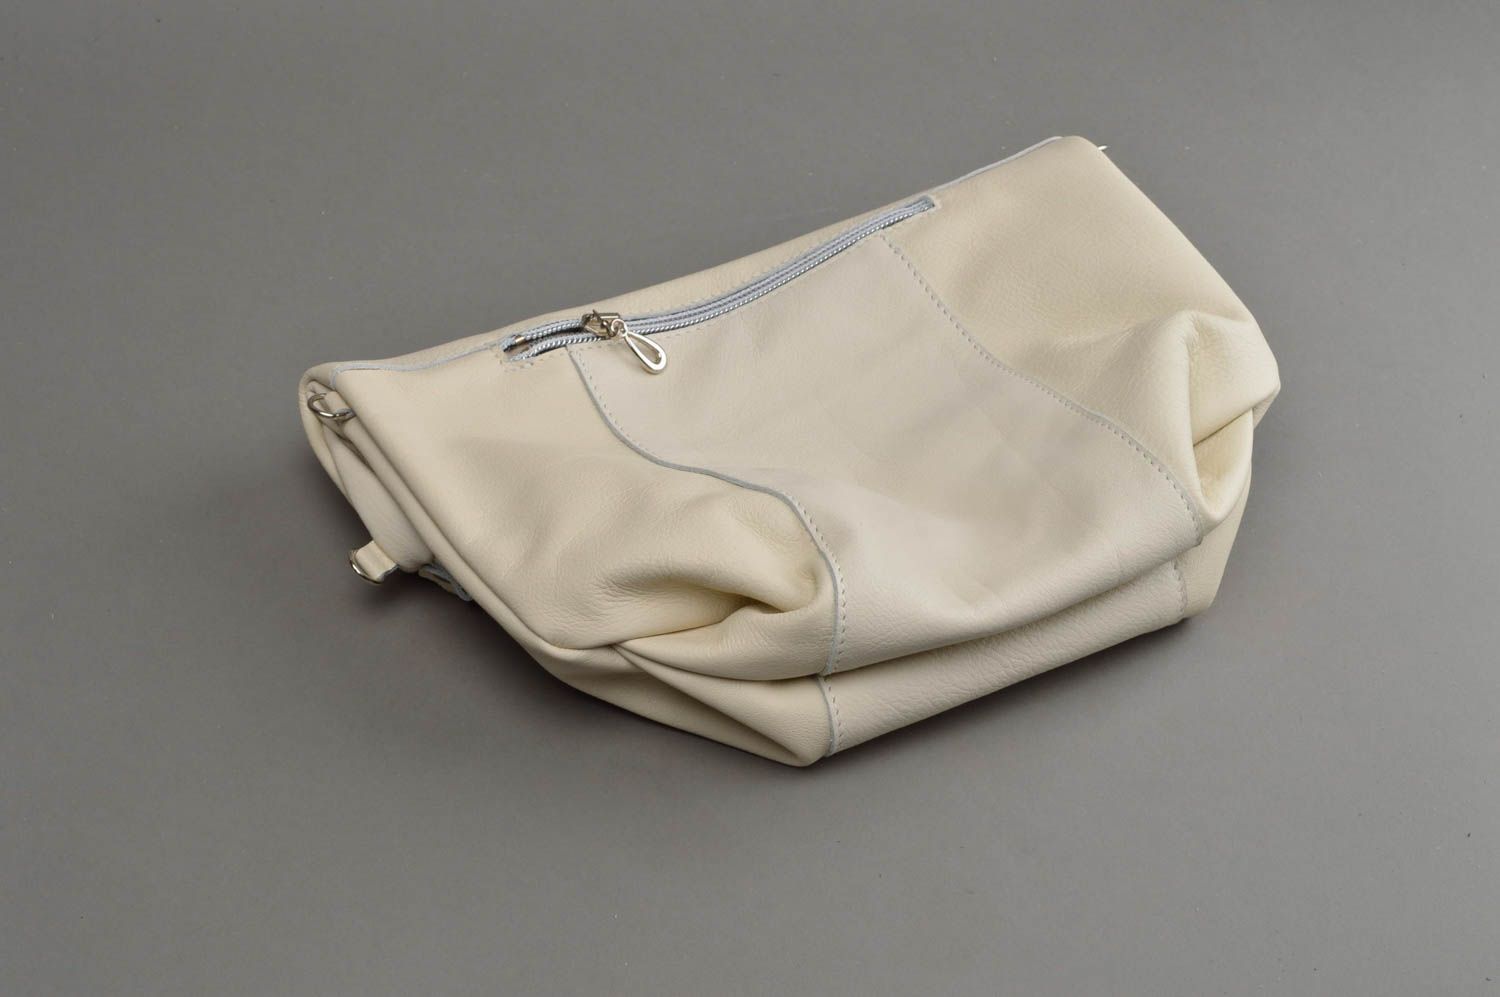 Large handmade genuine leather bag stylish shoulder bag leather goods ideas photo 4